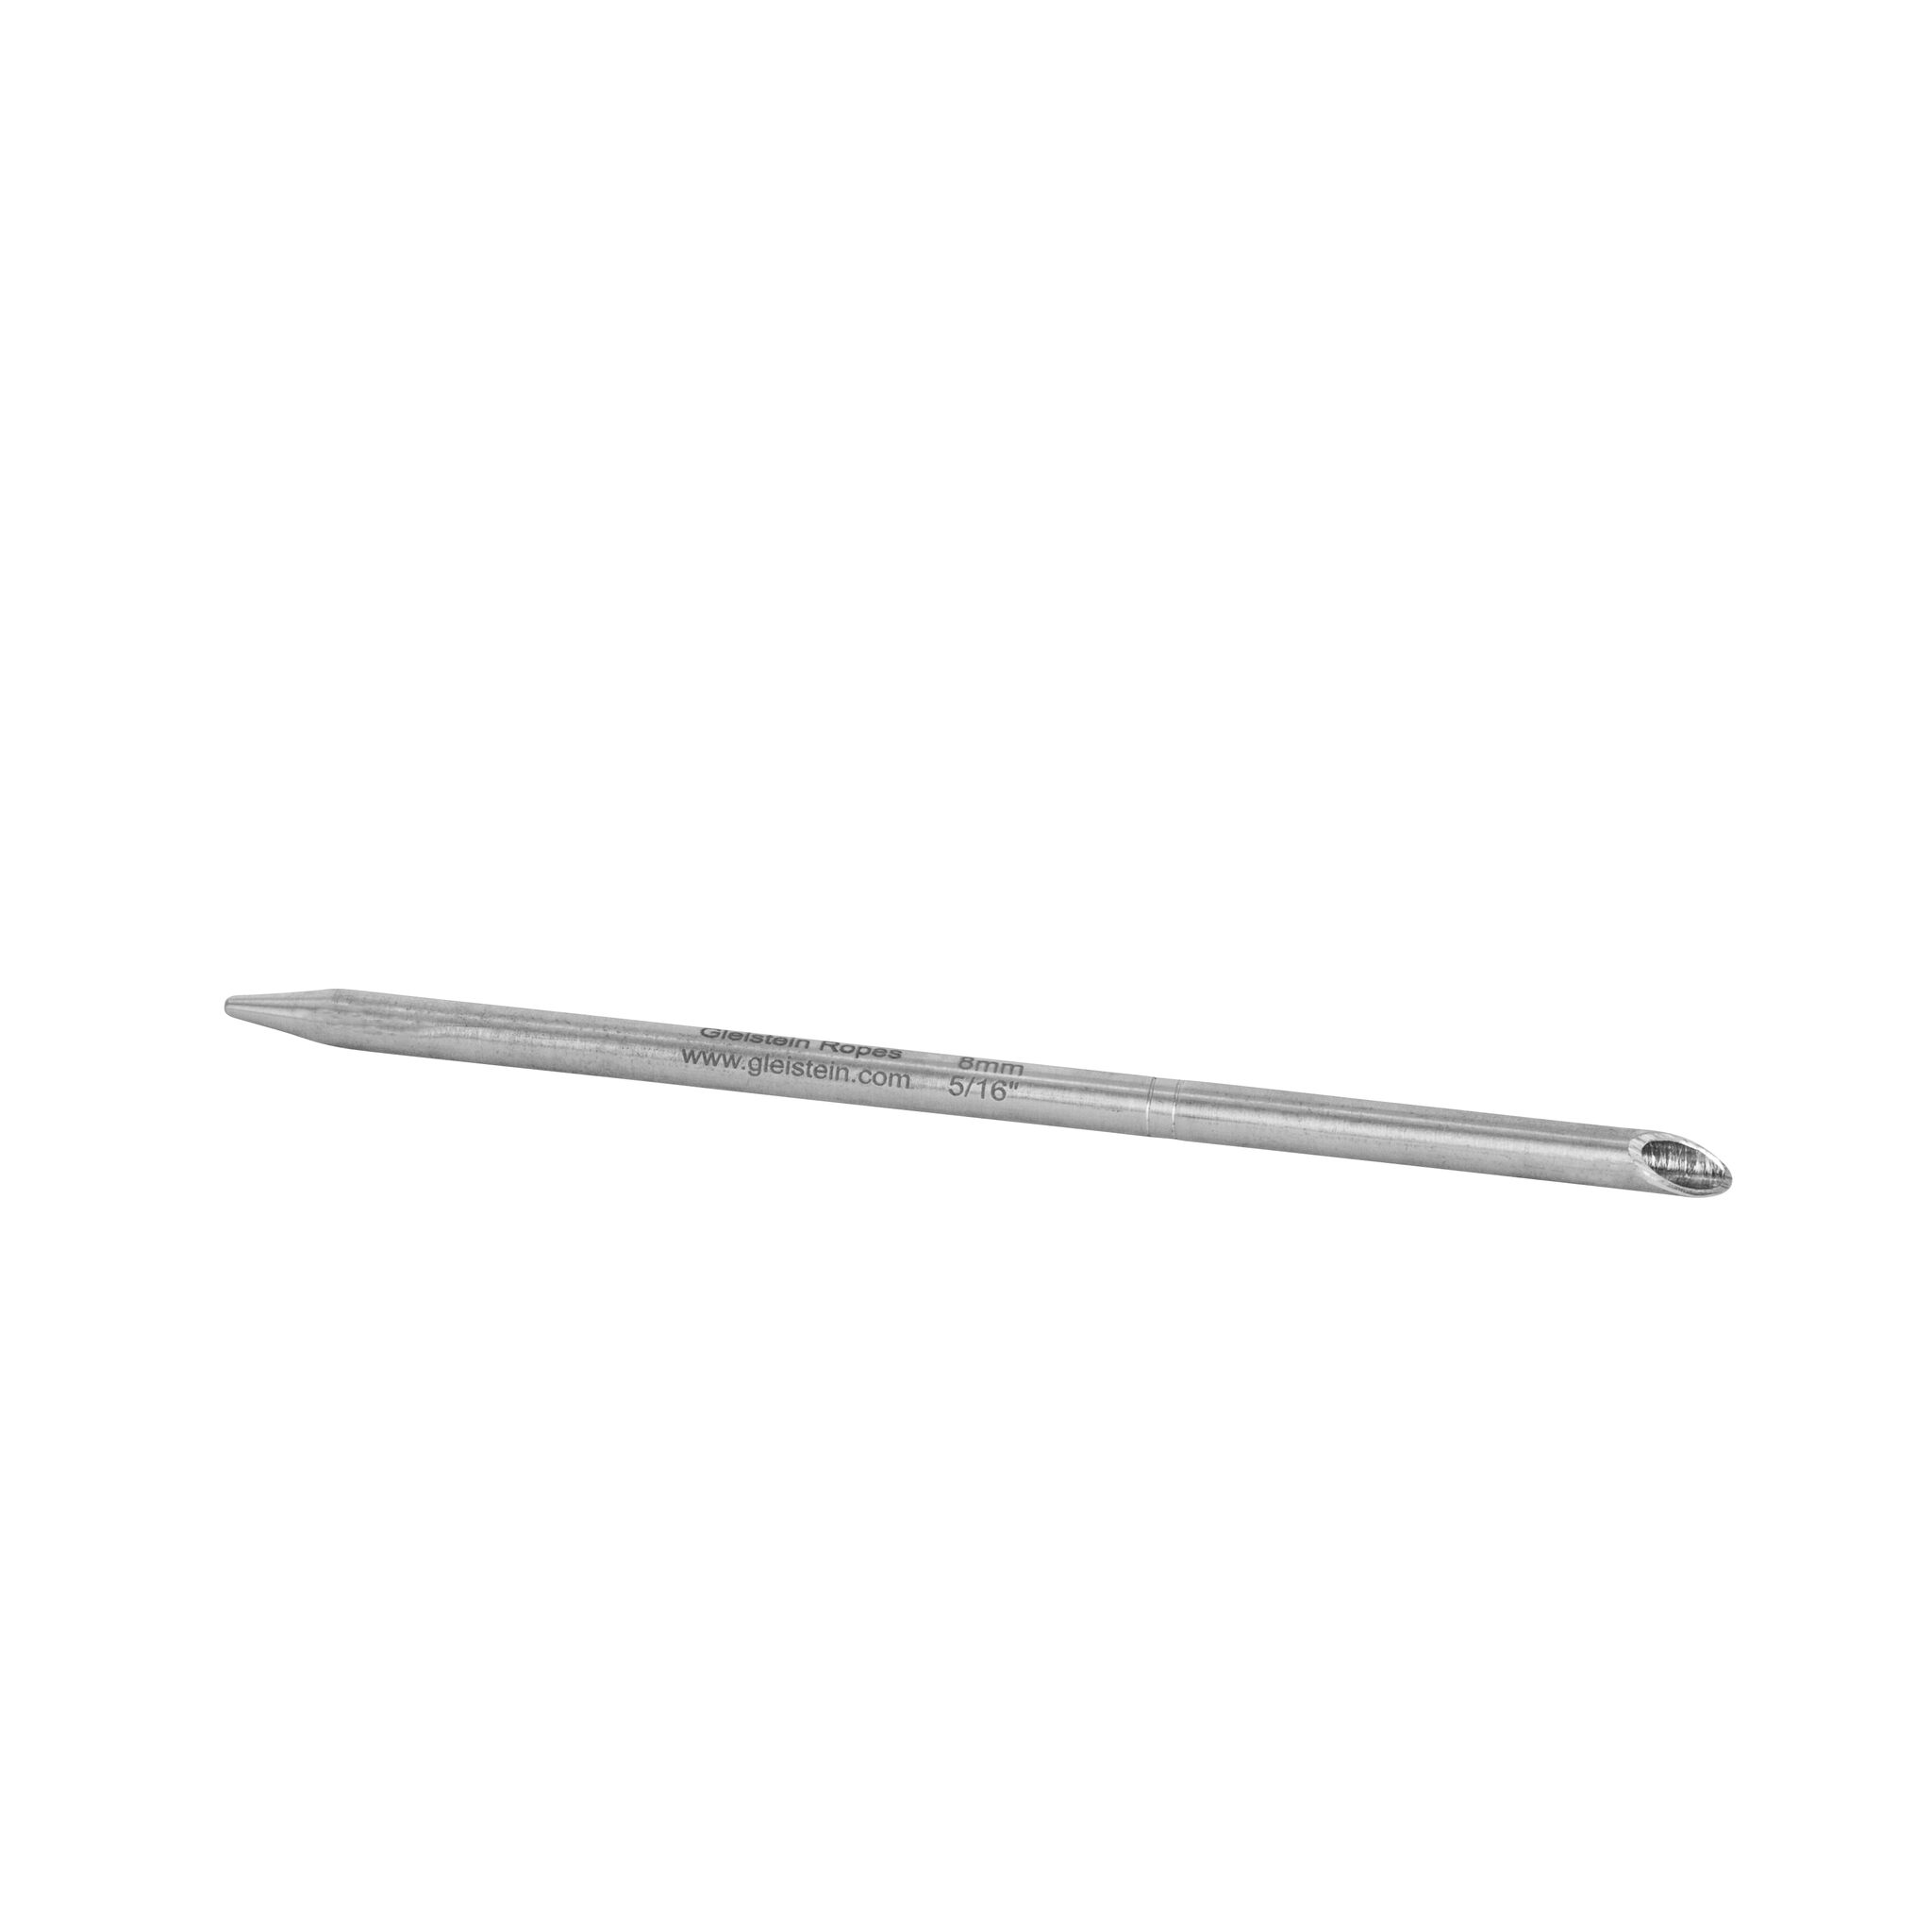 Gleistein splicing needle